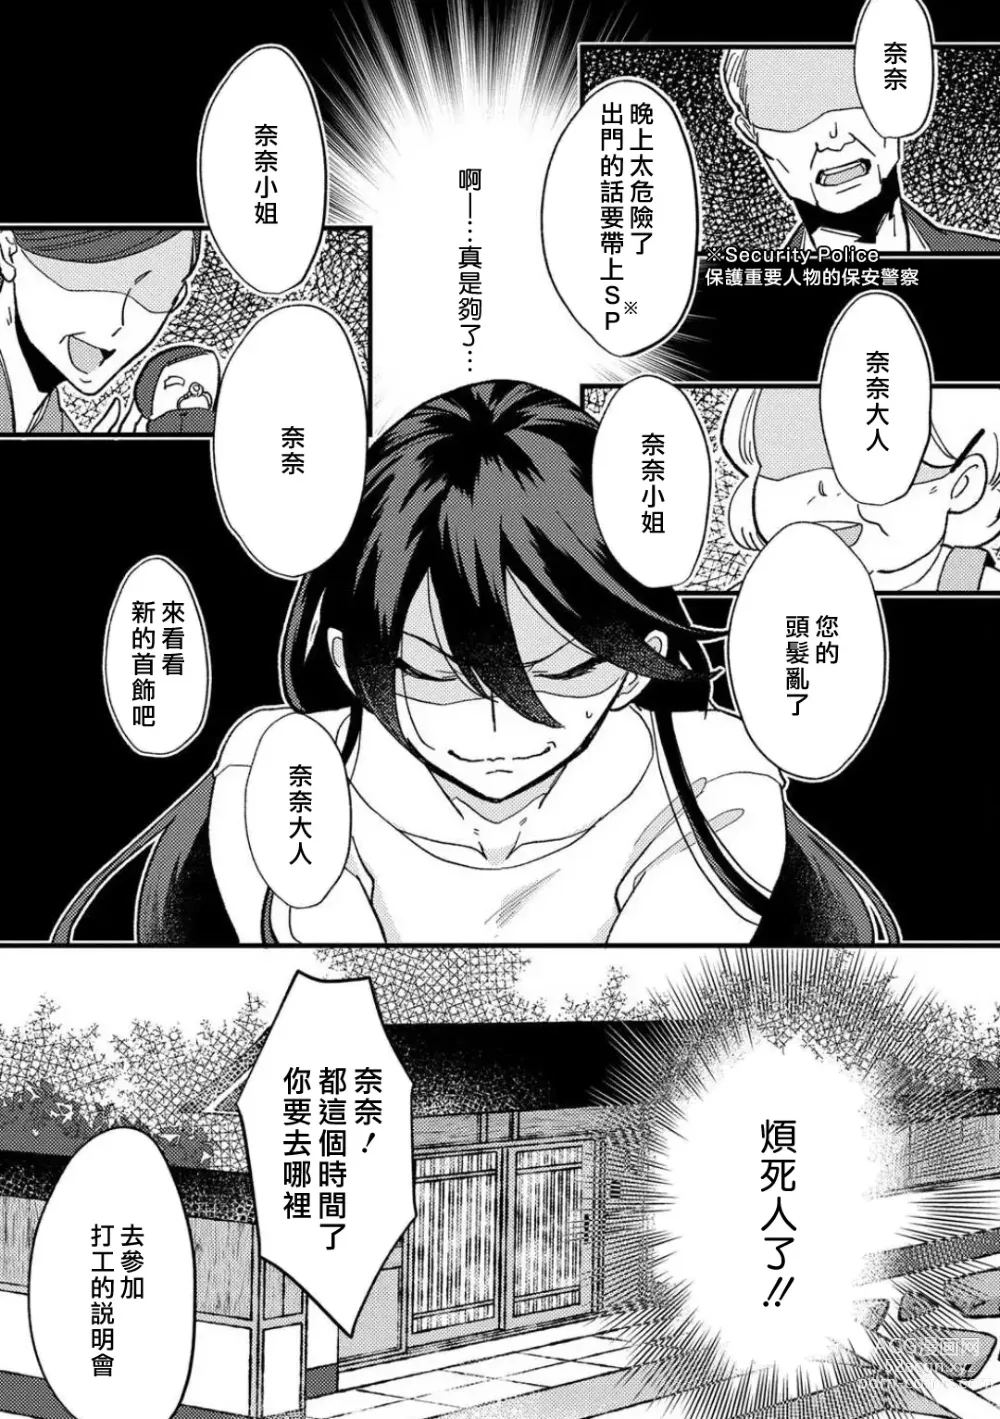 Page 4 of manga 败在他的眼泪攻势下 奈奈大小姐想被哭唧唧的男子推倒！ 1-6